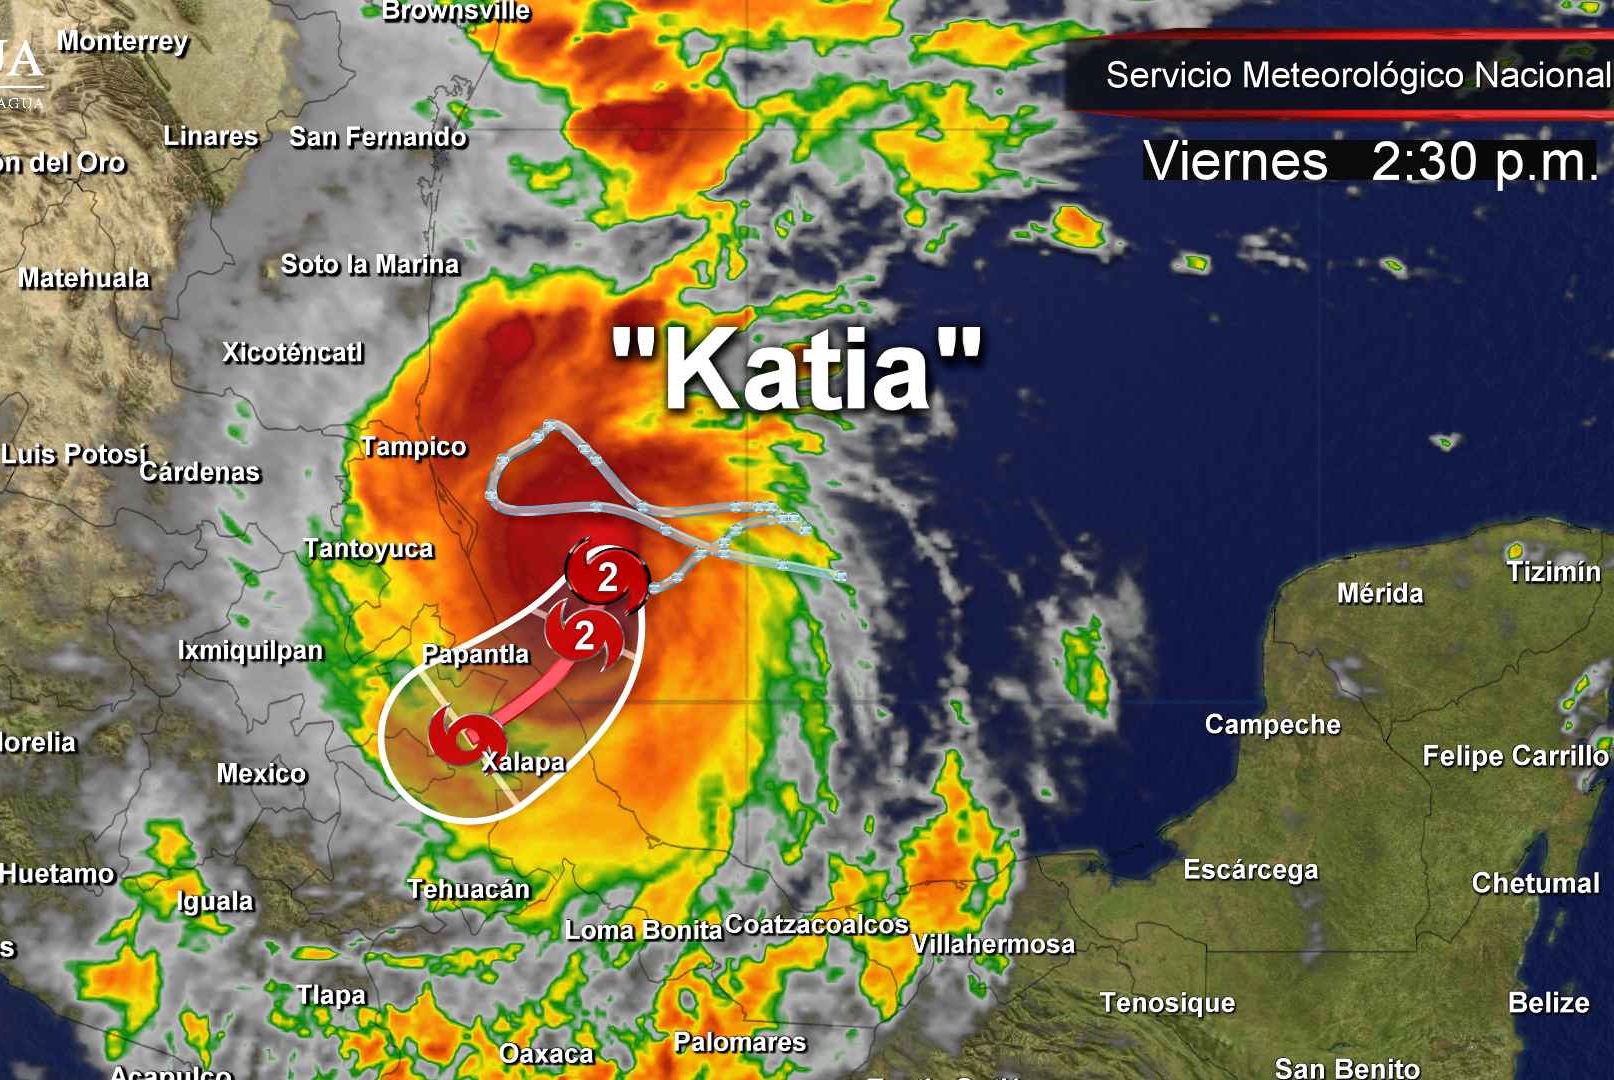 No creer rumores y acudir a refugios, pide el gobernador a población en zona de impacto de Katia